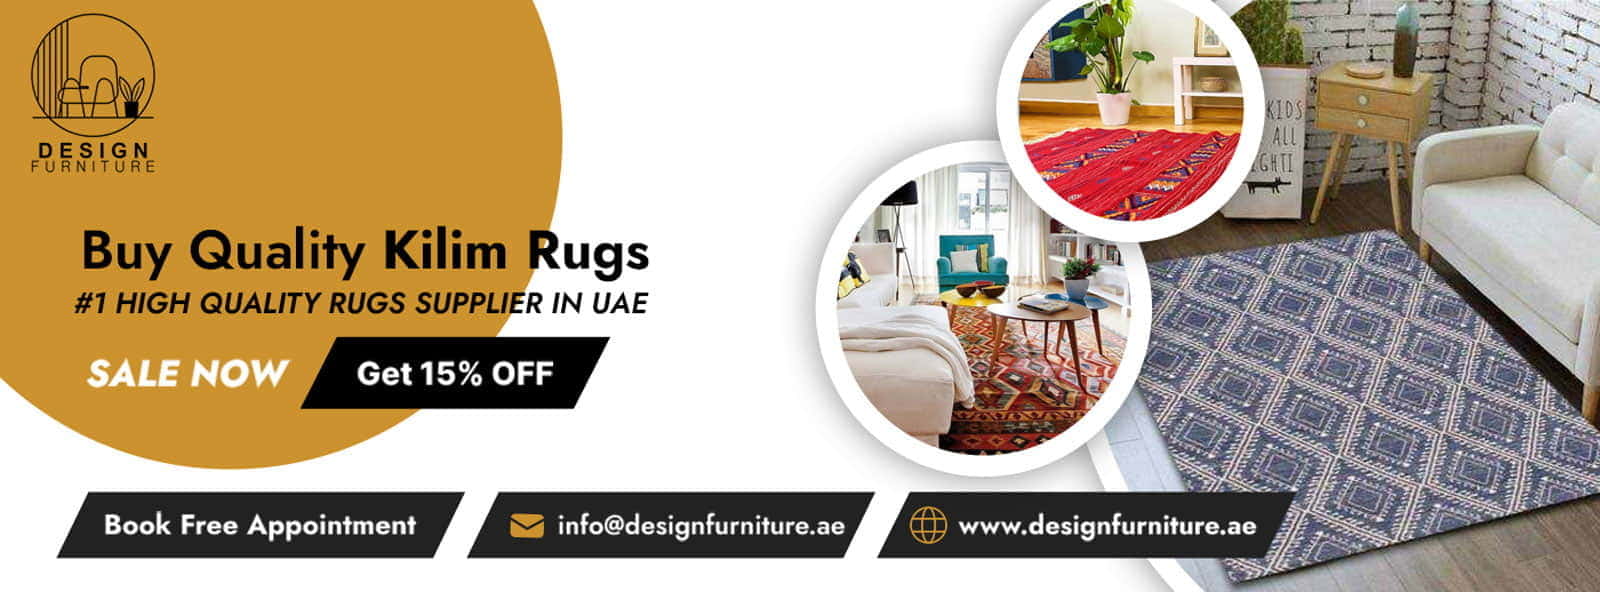 Buy Quality Kilim Rugs In UAE